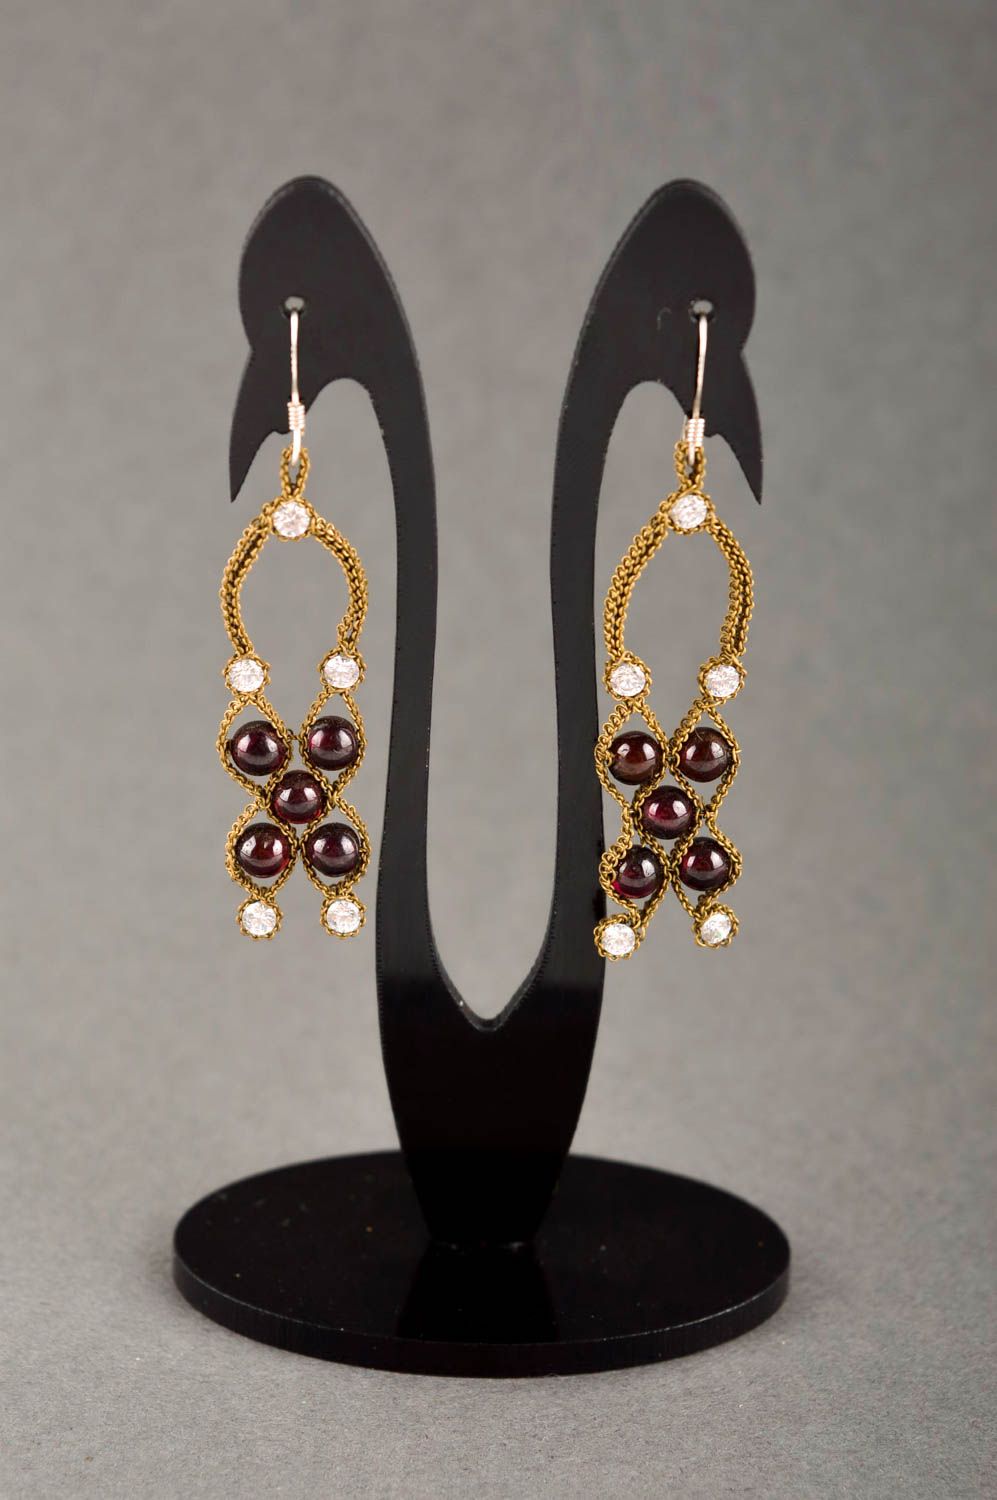 Beautiful handmade metal earrings gemstone earrings artisan jewelry designs photo 1